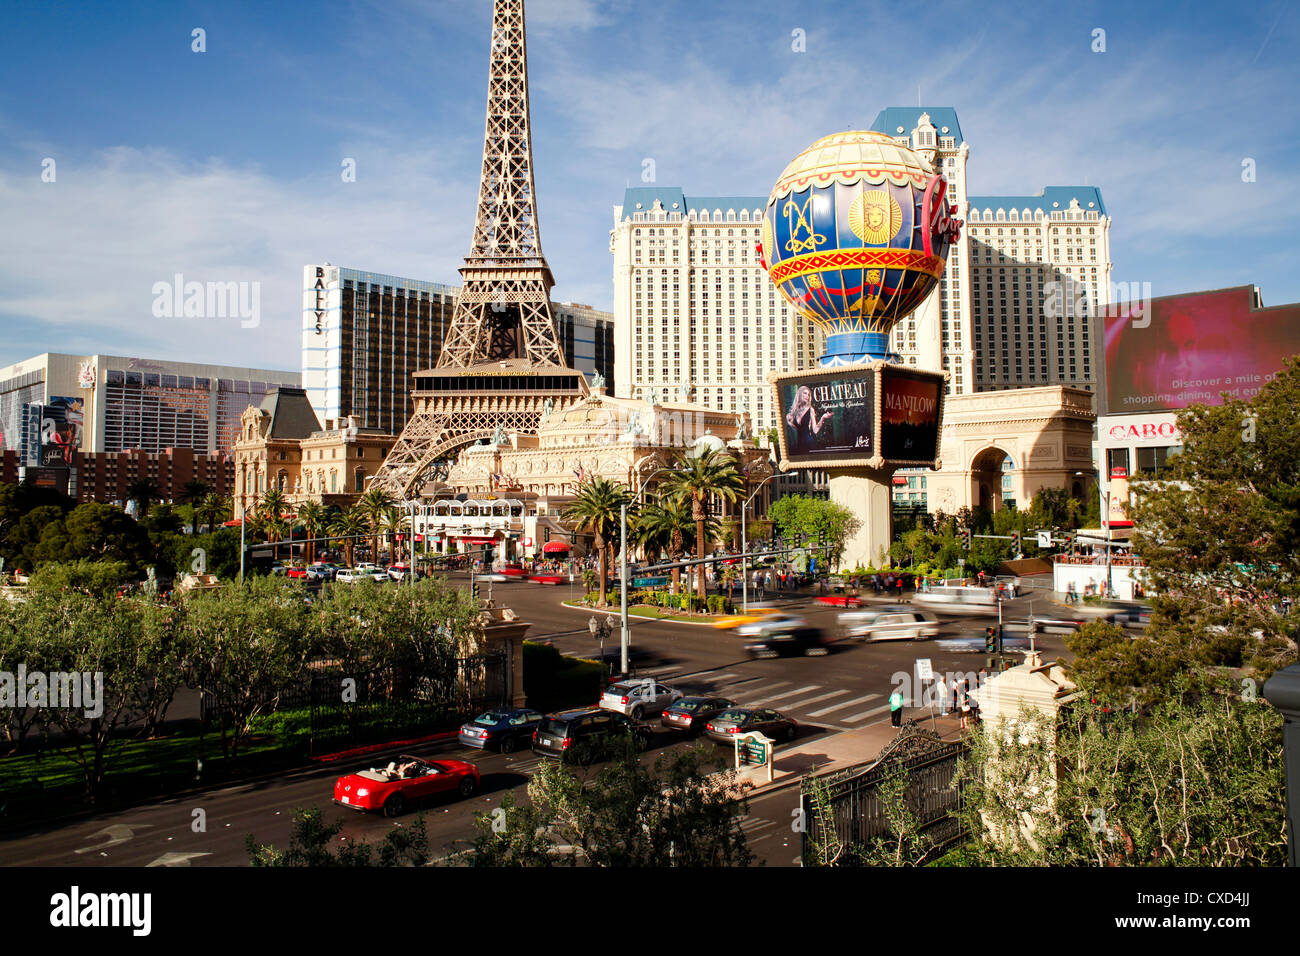 Paris Casino sur le Strip, Las Vegas, Nevada, États-Unis d'Amérique, Amérique du Nord Banque D'Images